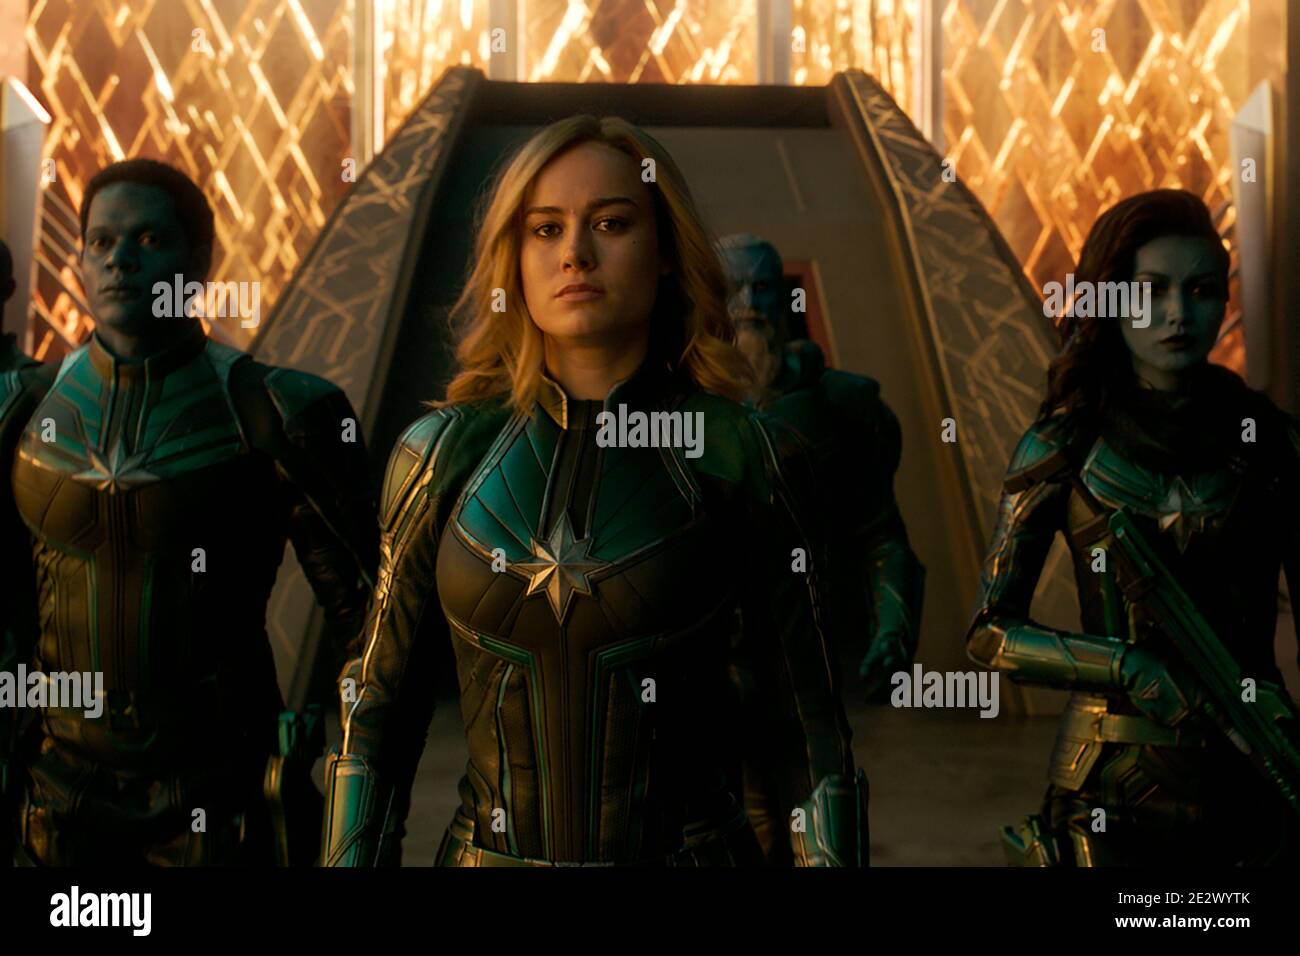 MARAVILLA CAPITÁN de los estudios de Marvel. Protagonizada por Brie Larson como Capitán Marvel / Carol Danvers Foto de stock